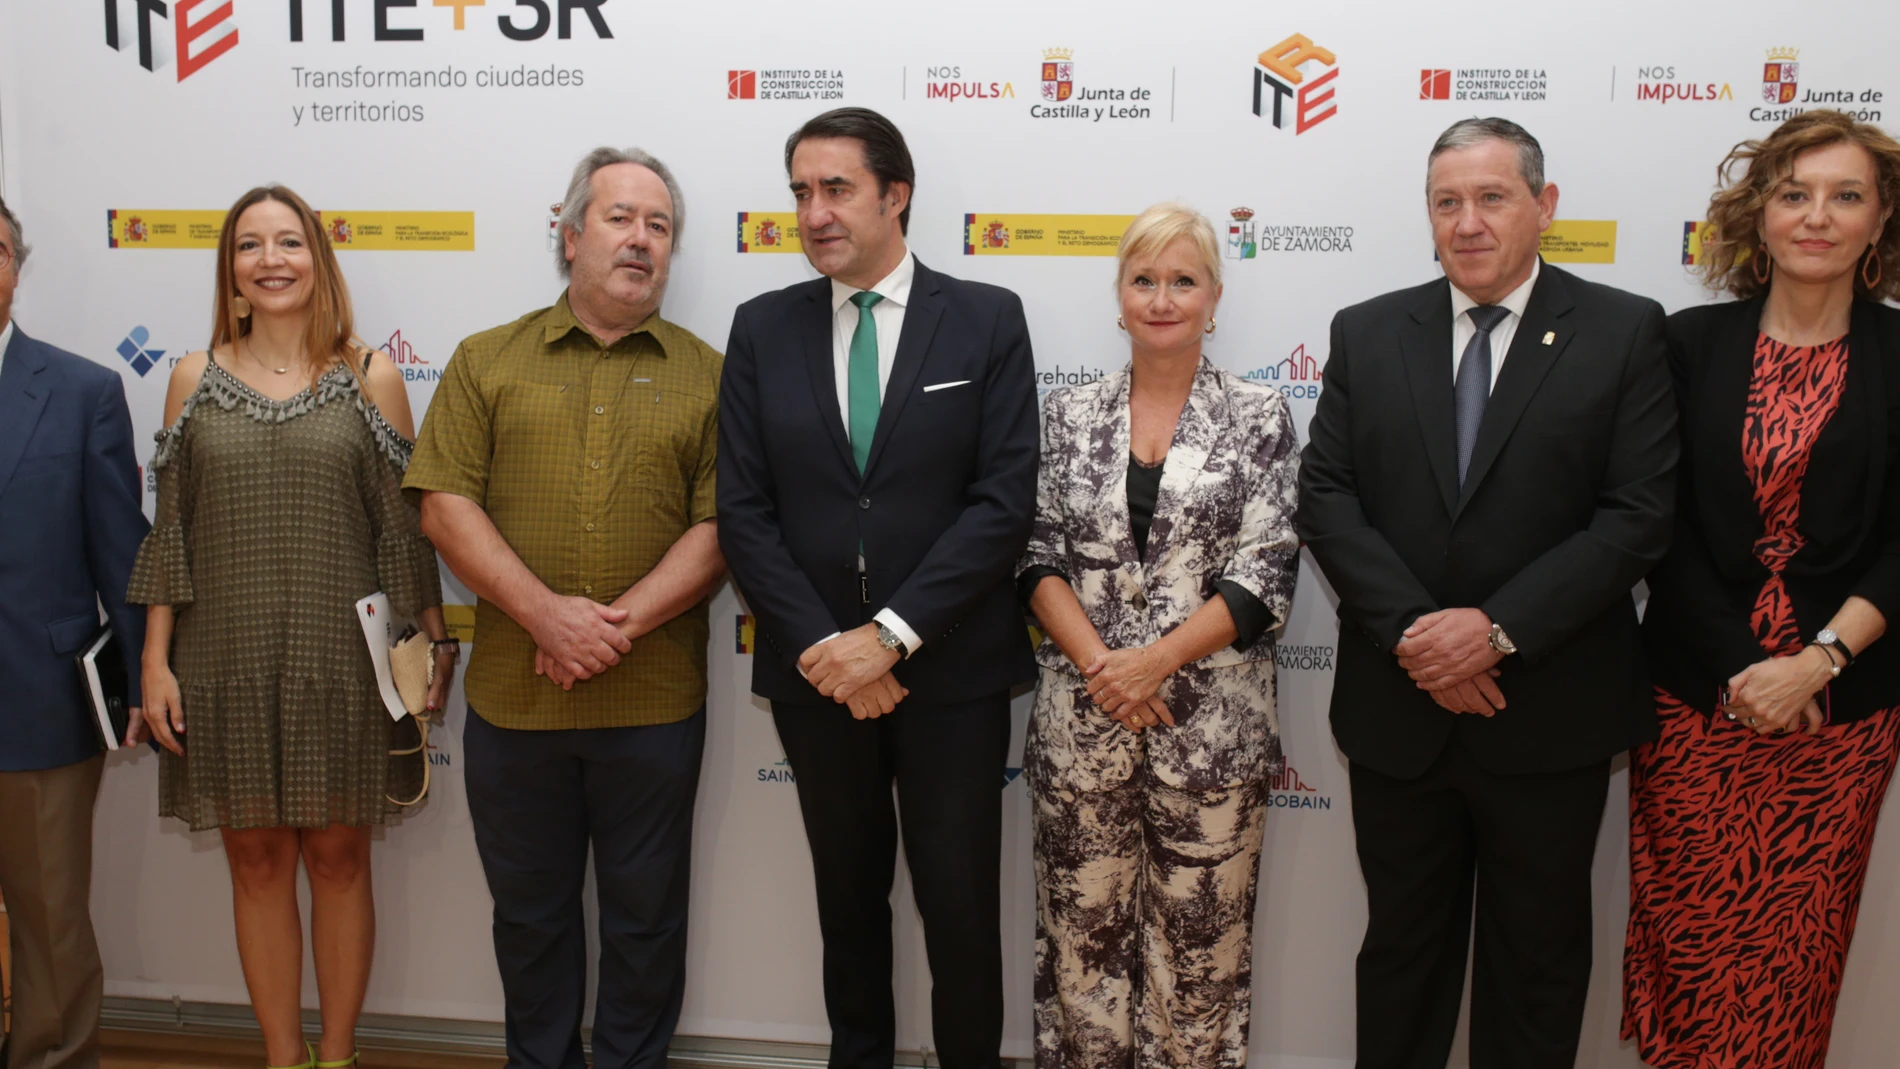 Inauguración del Congreso ITE+3R Transformado Ciudades y Territorios en Zamora